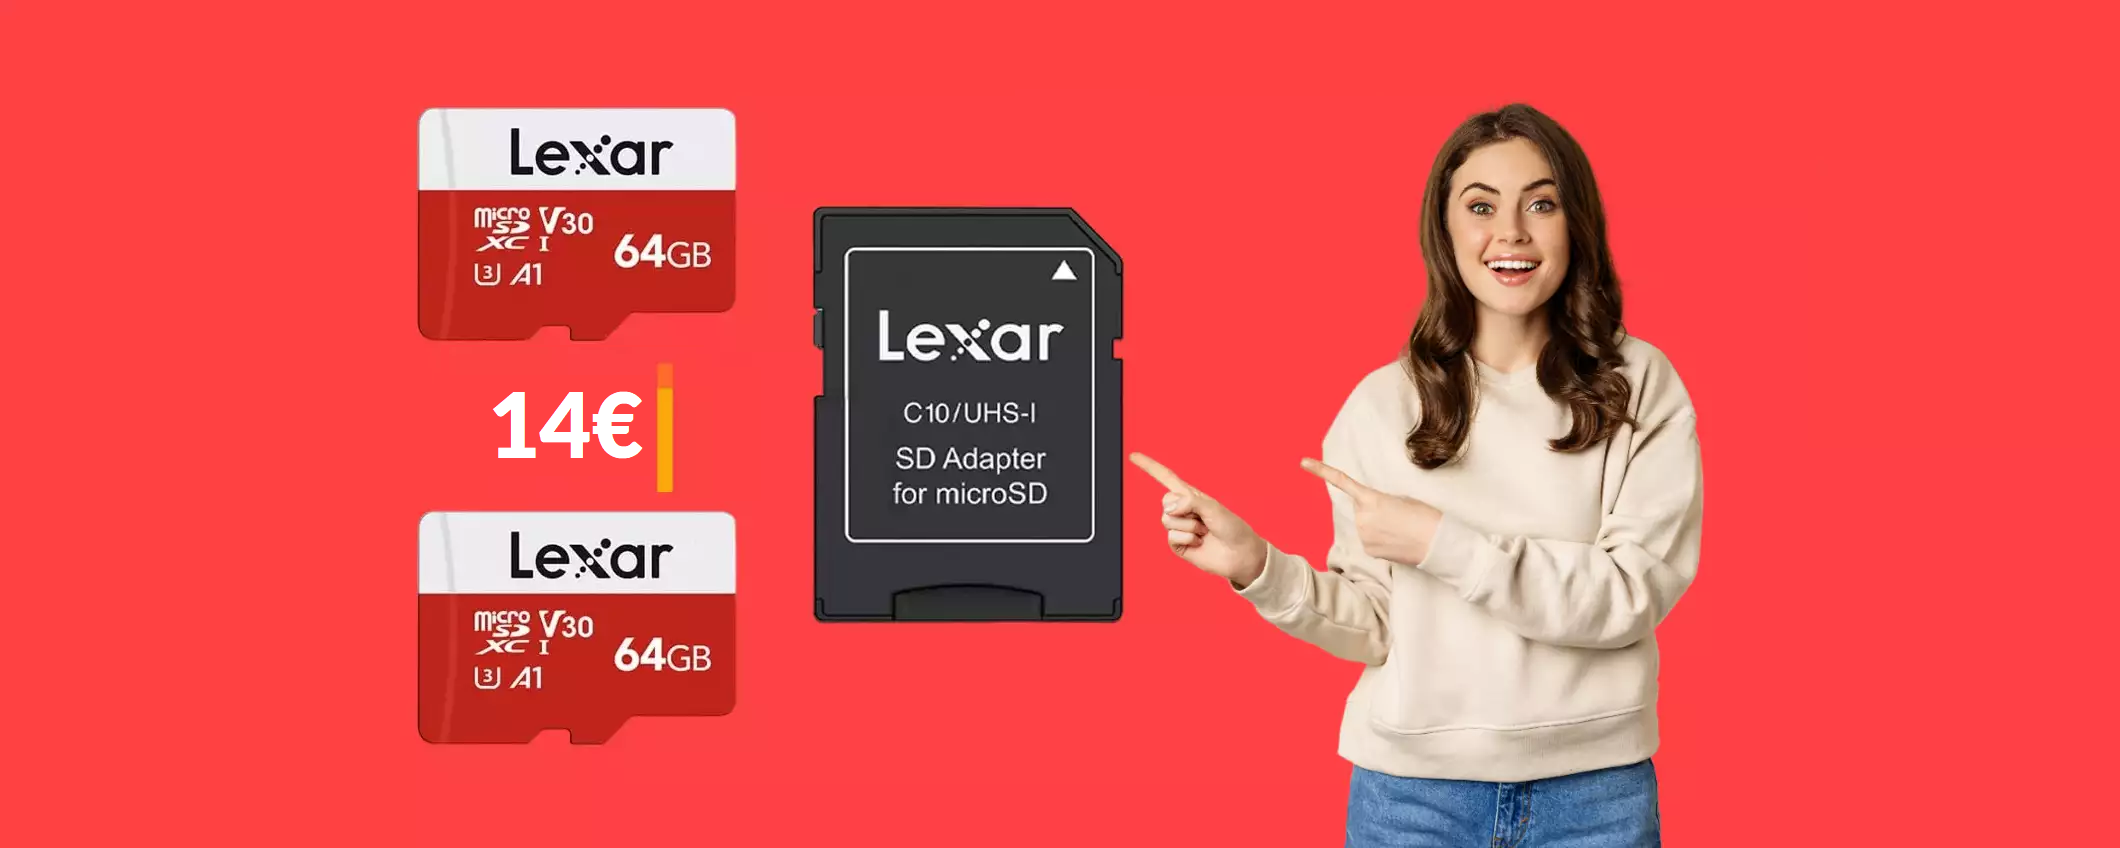 MicroSD 64GB Lexar: bastano 14€ per averne DUE con adattatore